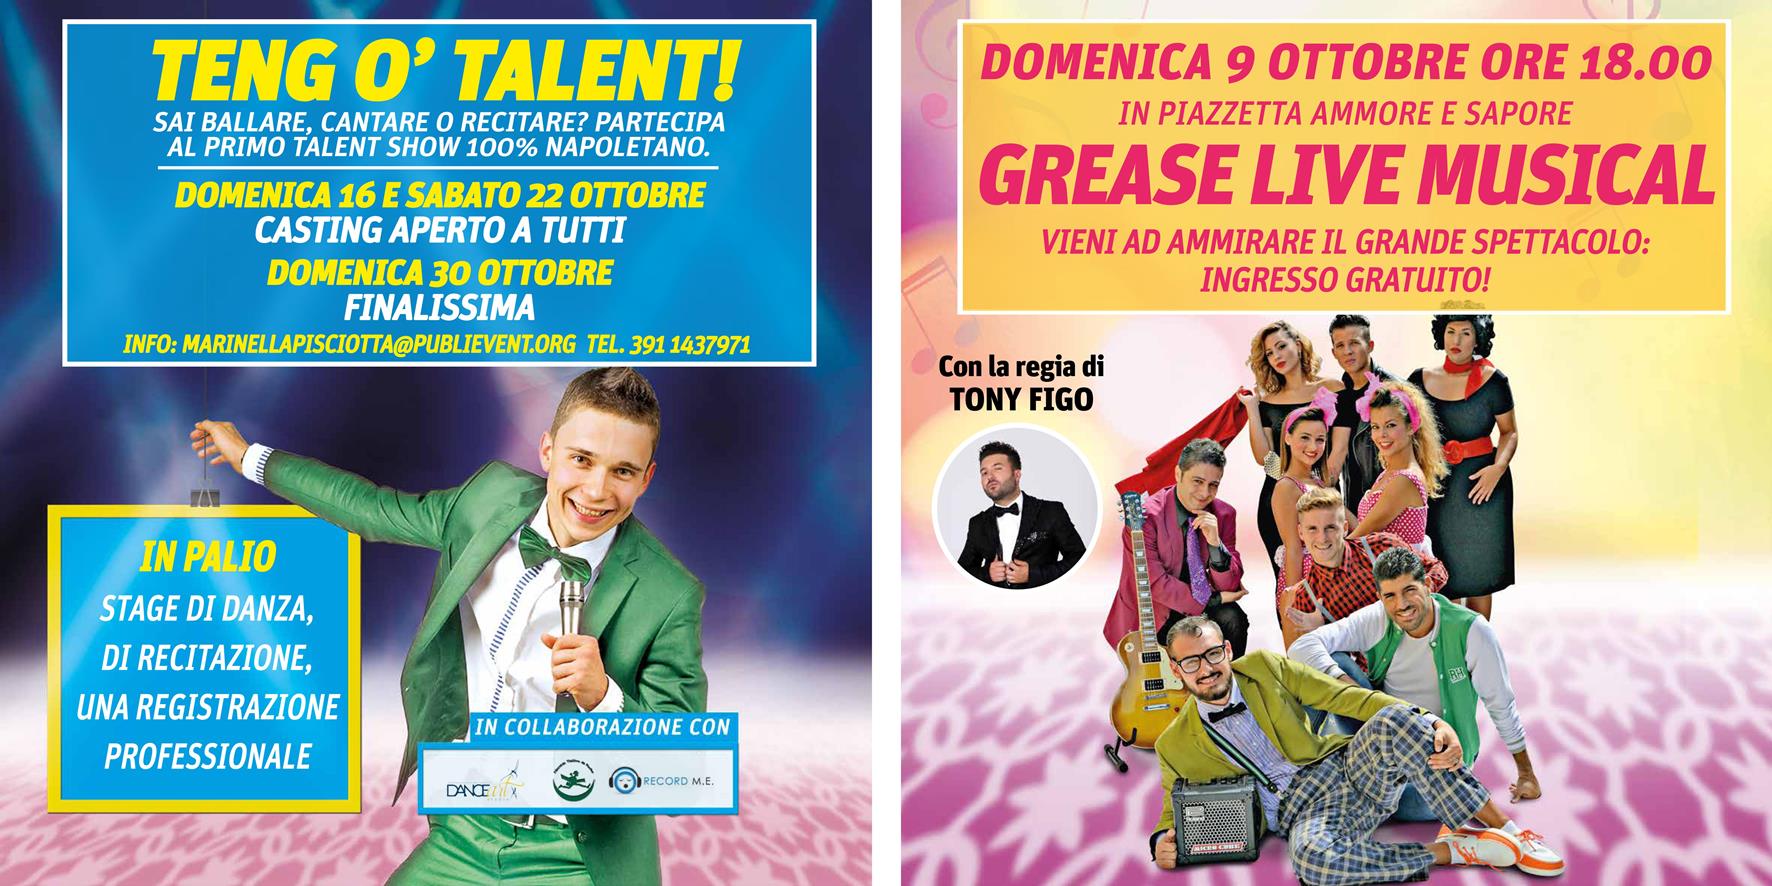 Il Centro Commerciale AUchan di Via Argine cerca ‘o talent  con il musical Grease e il primo talent show 100% napoletano